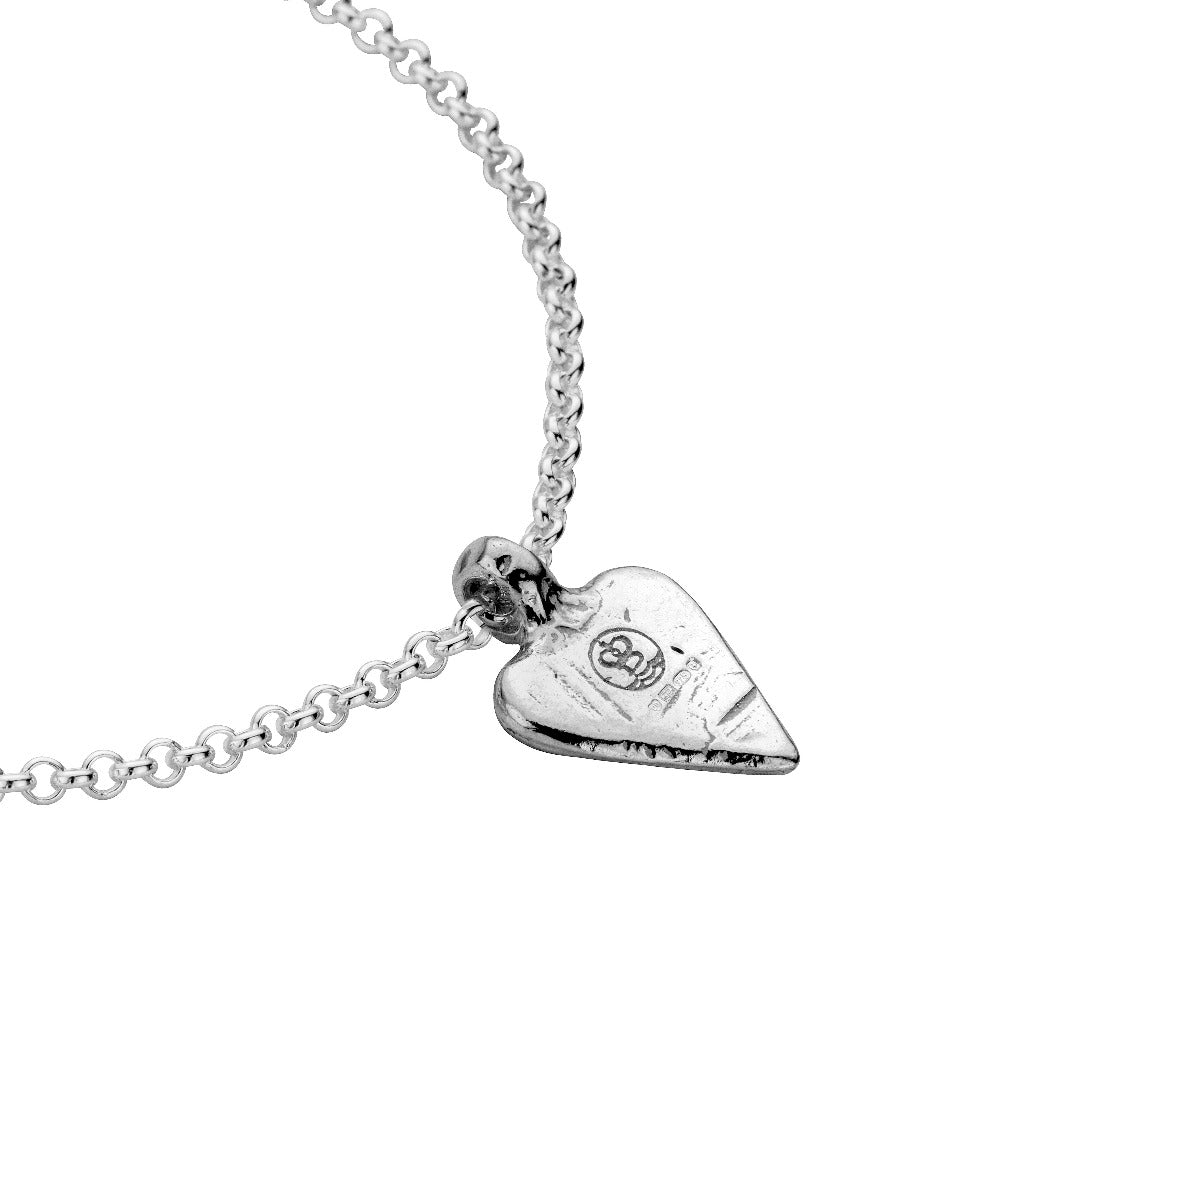 Silver Mini Heart Chain Bracelet